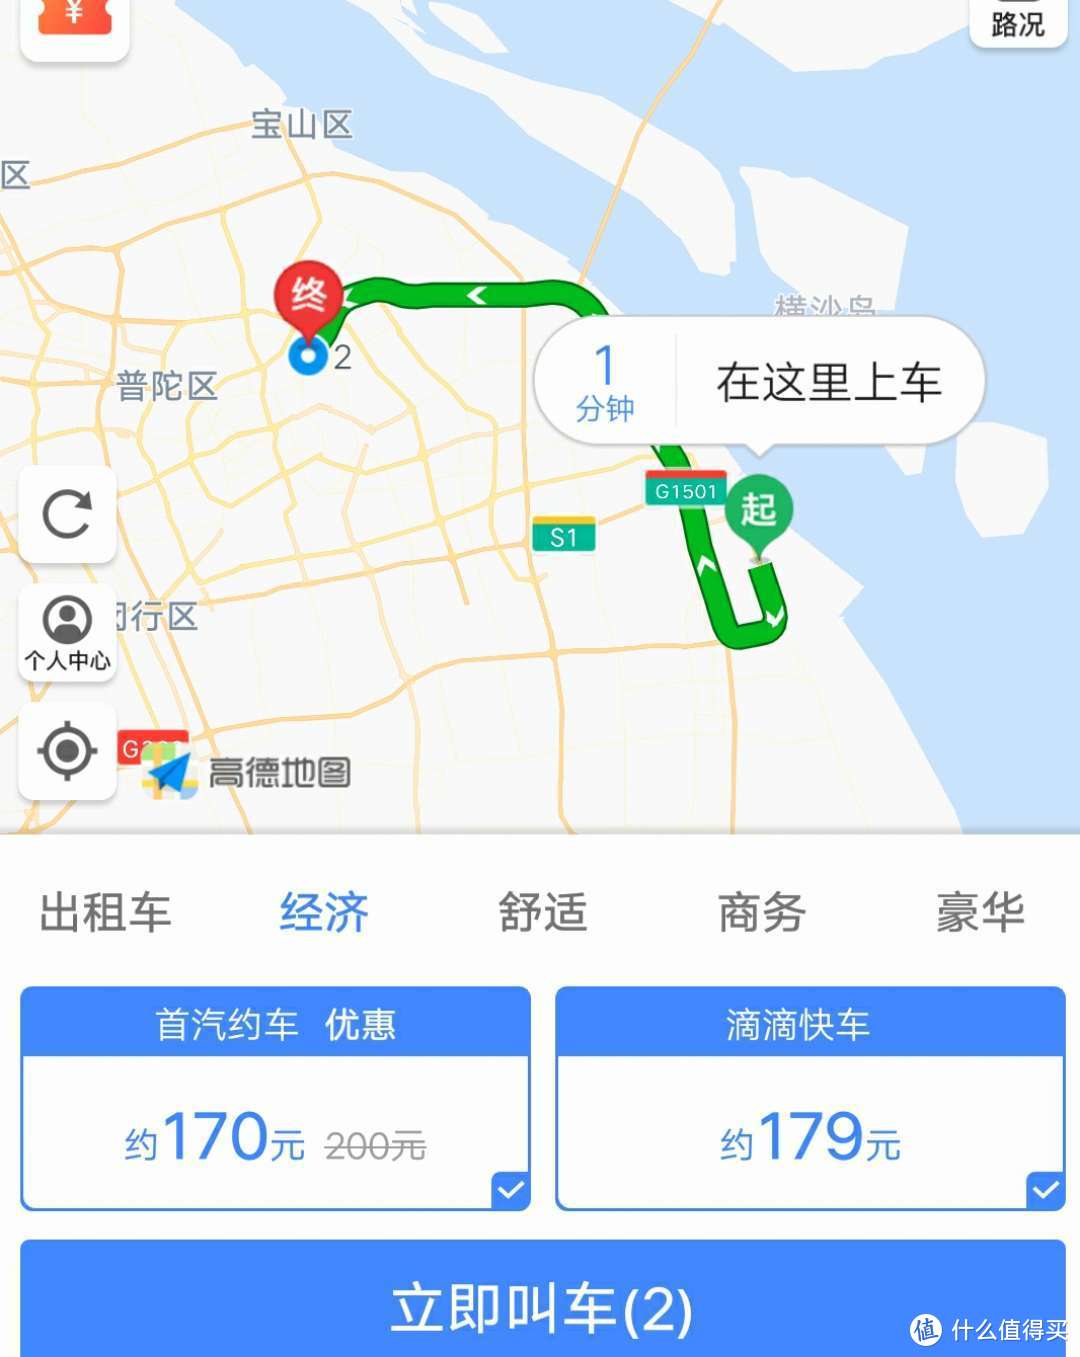 #剁主计划-上海#冬奥会期间6天5晚说走就走的济州岛自由行